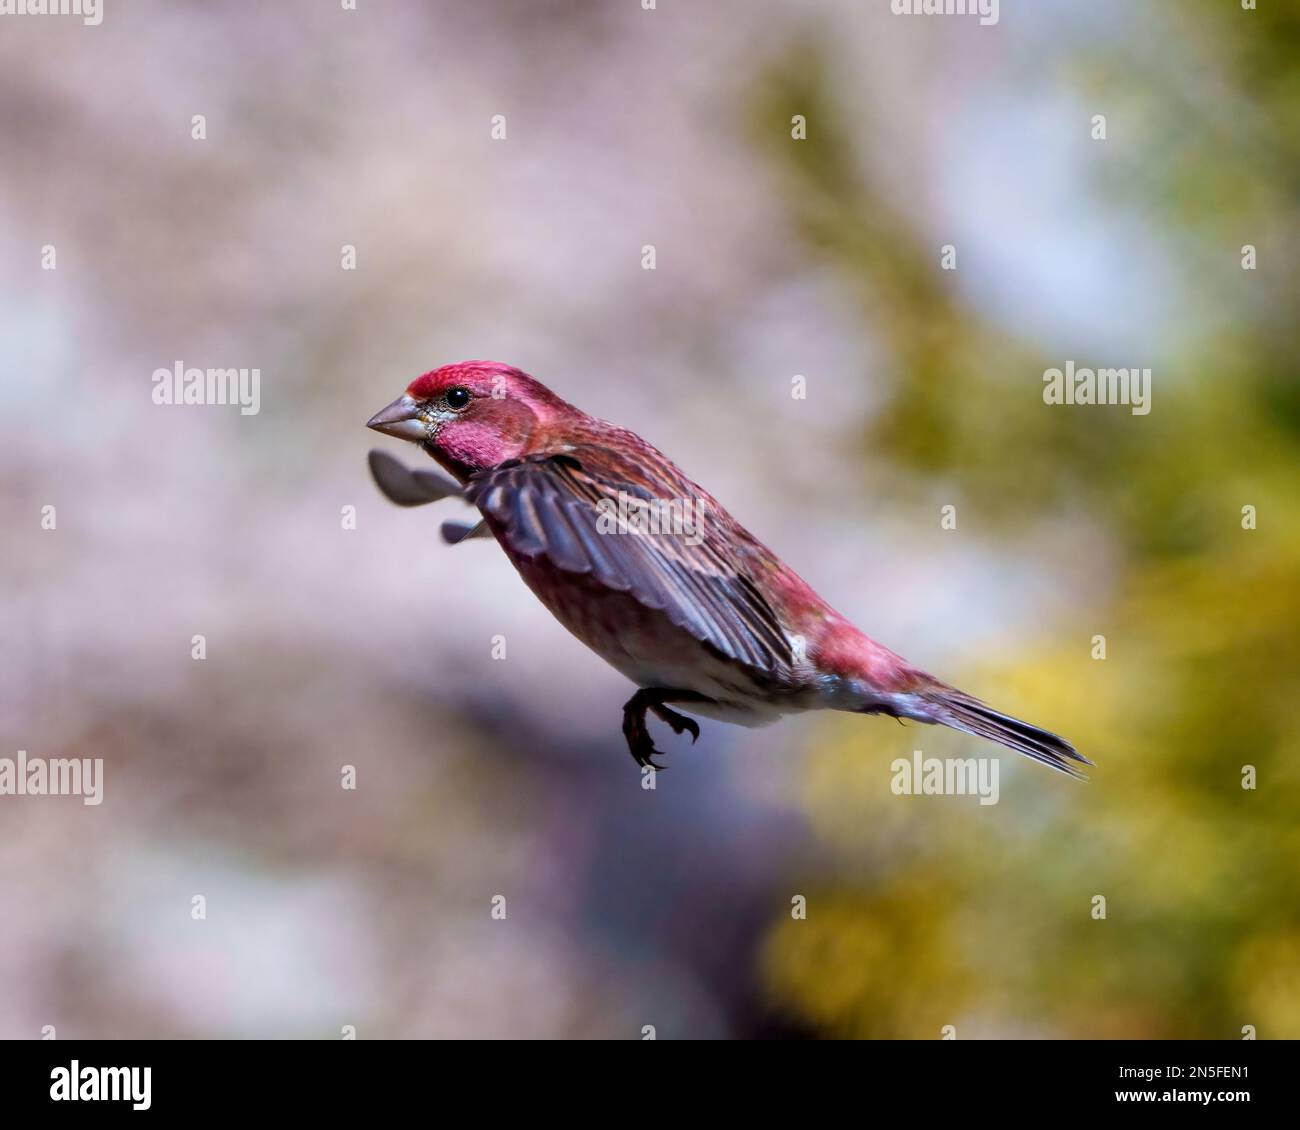 Finch macho volando con sus hermosas alas de color rojo con un fondo borroso en su entorno y hábitat. Vuelo de aves. Finch morado. Foto de stock